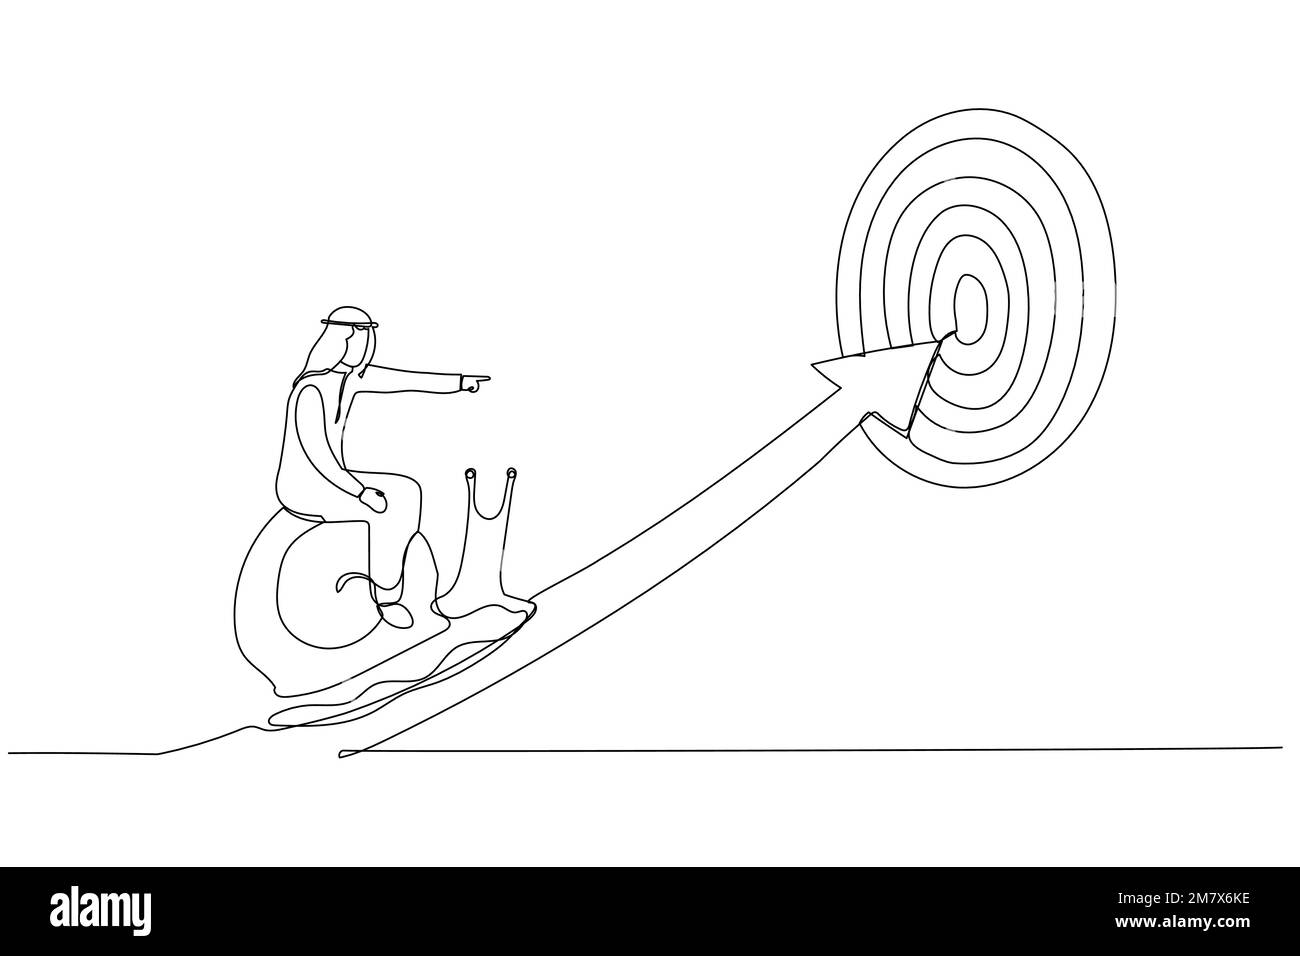 Illustrazione di un uomo d'affari arabo provato a cavallo lumaca lento a piedi sulla freccia per raggiungere l'obiettivo. Metafora del lento progresso aziendale, della pigrizia o del procrastin Illustrazione Vettoriale